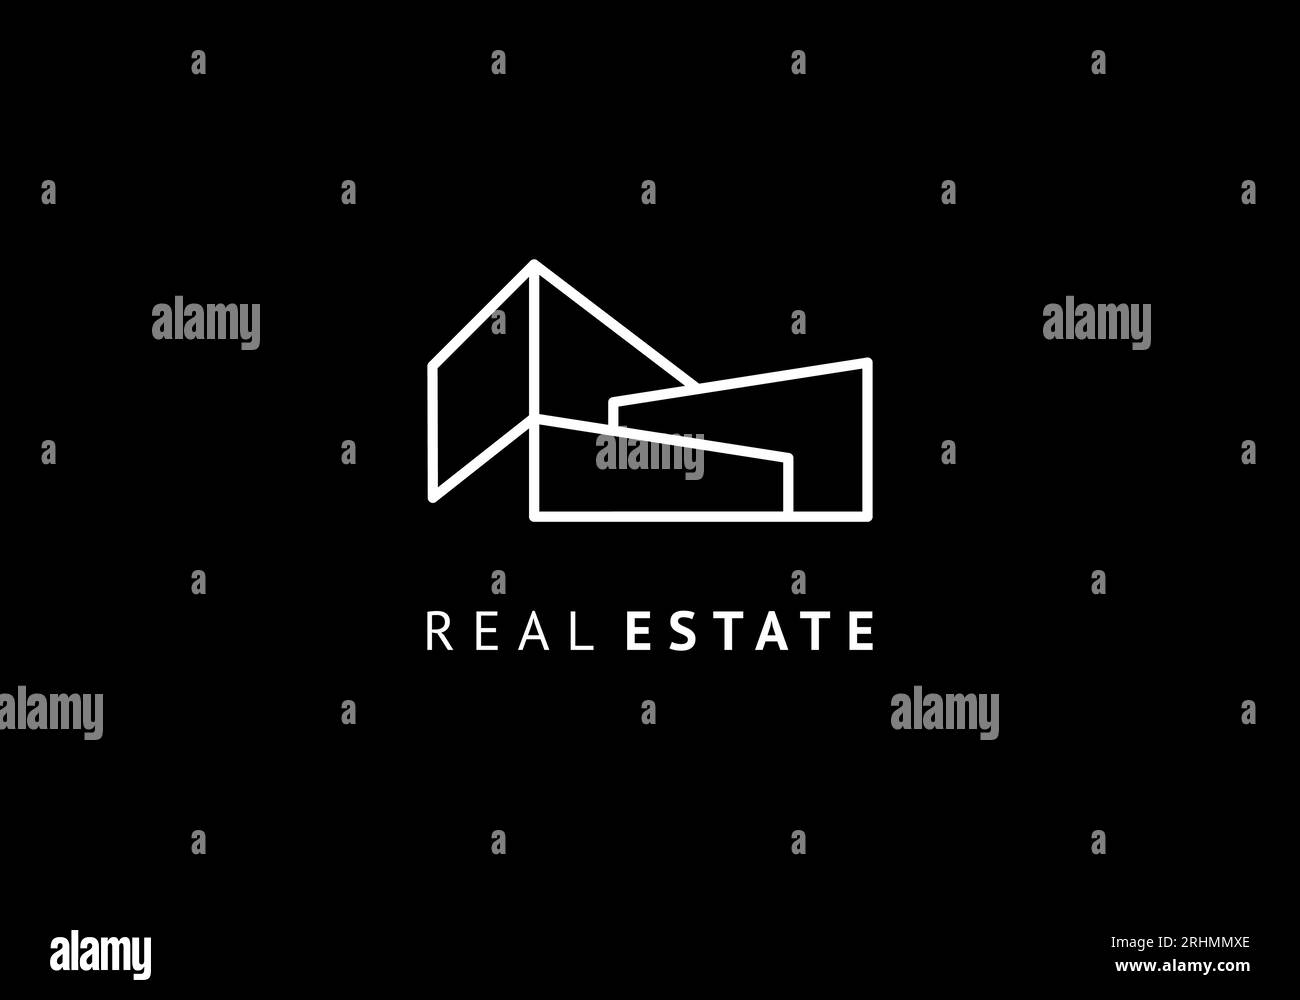 Architektur-Logo-Vorlage, Immobiliensymbol modernes Gebäude, Linie minimales Design. Vektor-Illustration Wohnung abstrakte Konstruktion. Stock Vektor